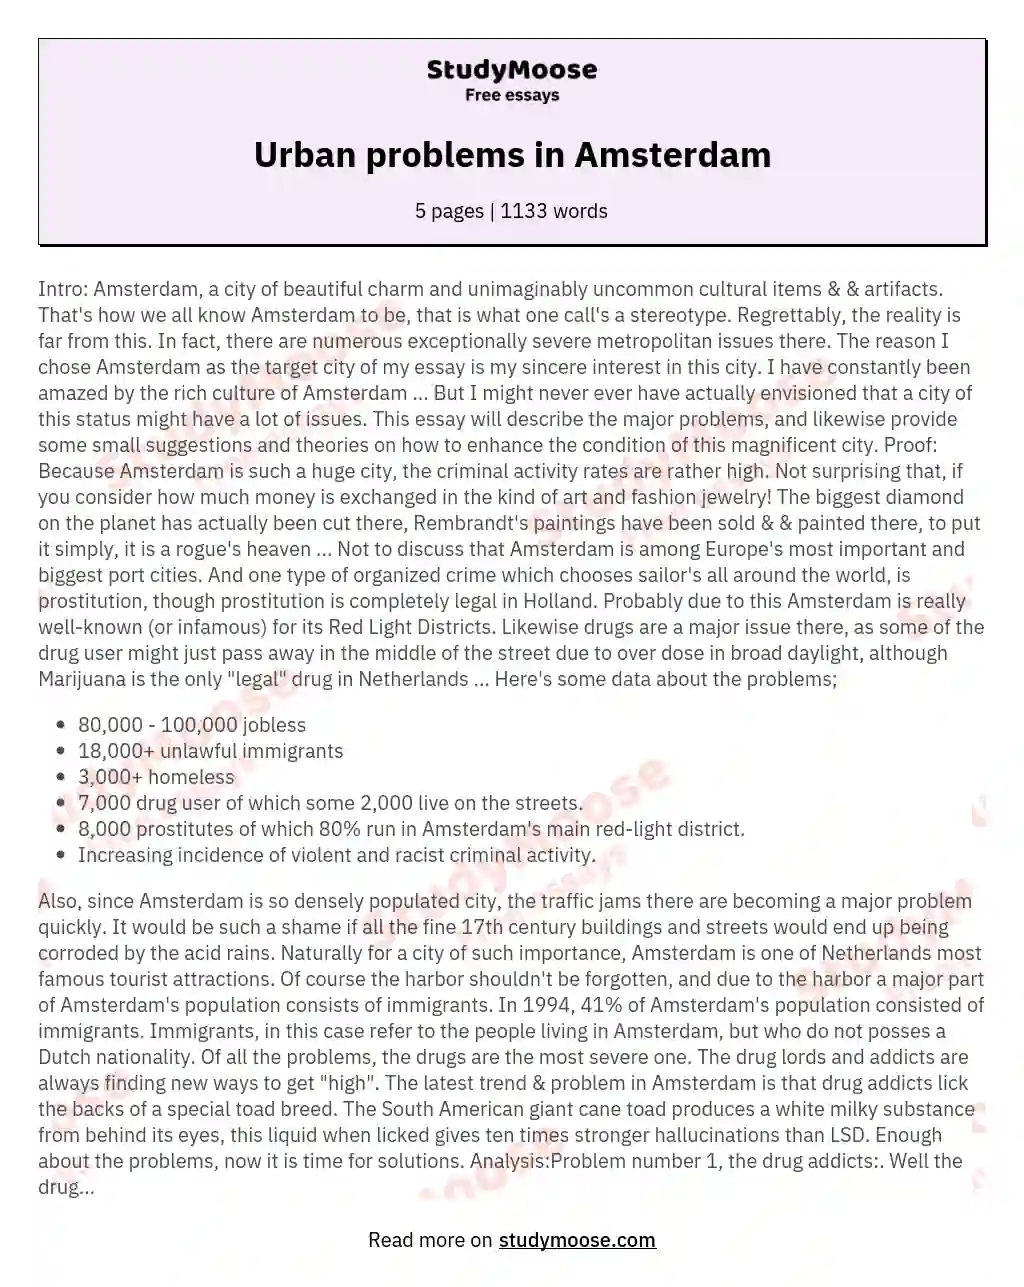 Urban problems in Amsterdam essay